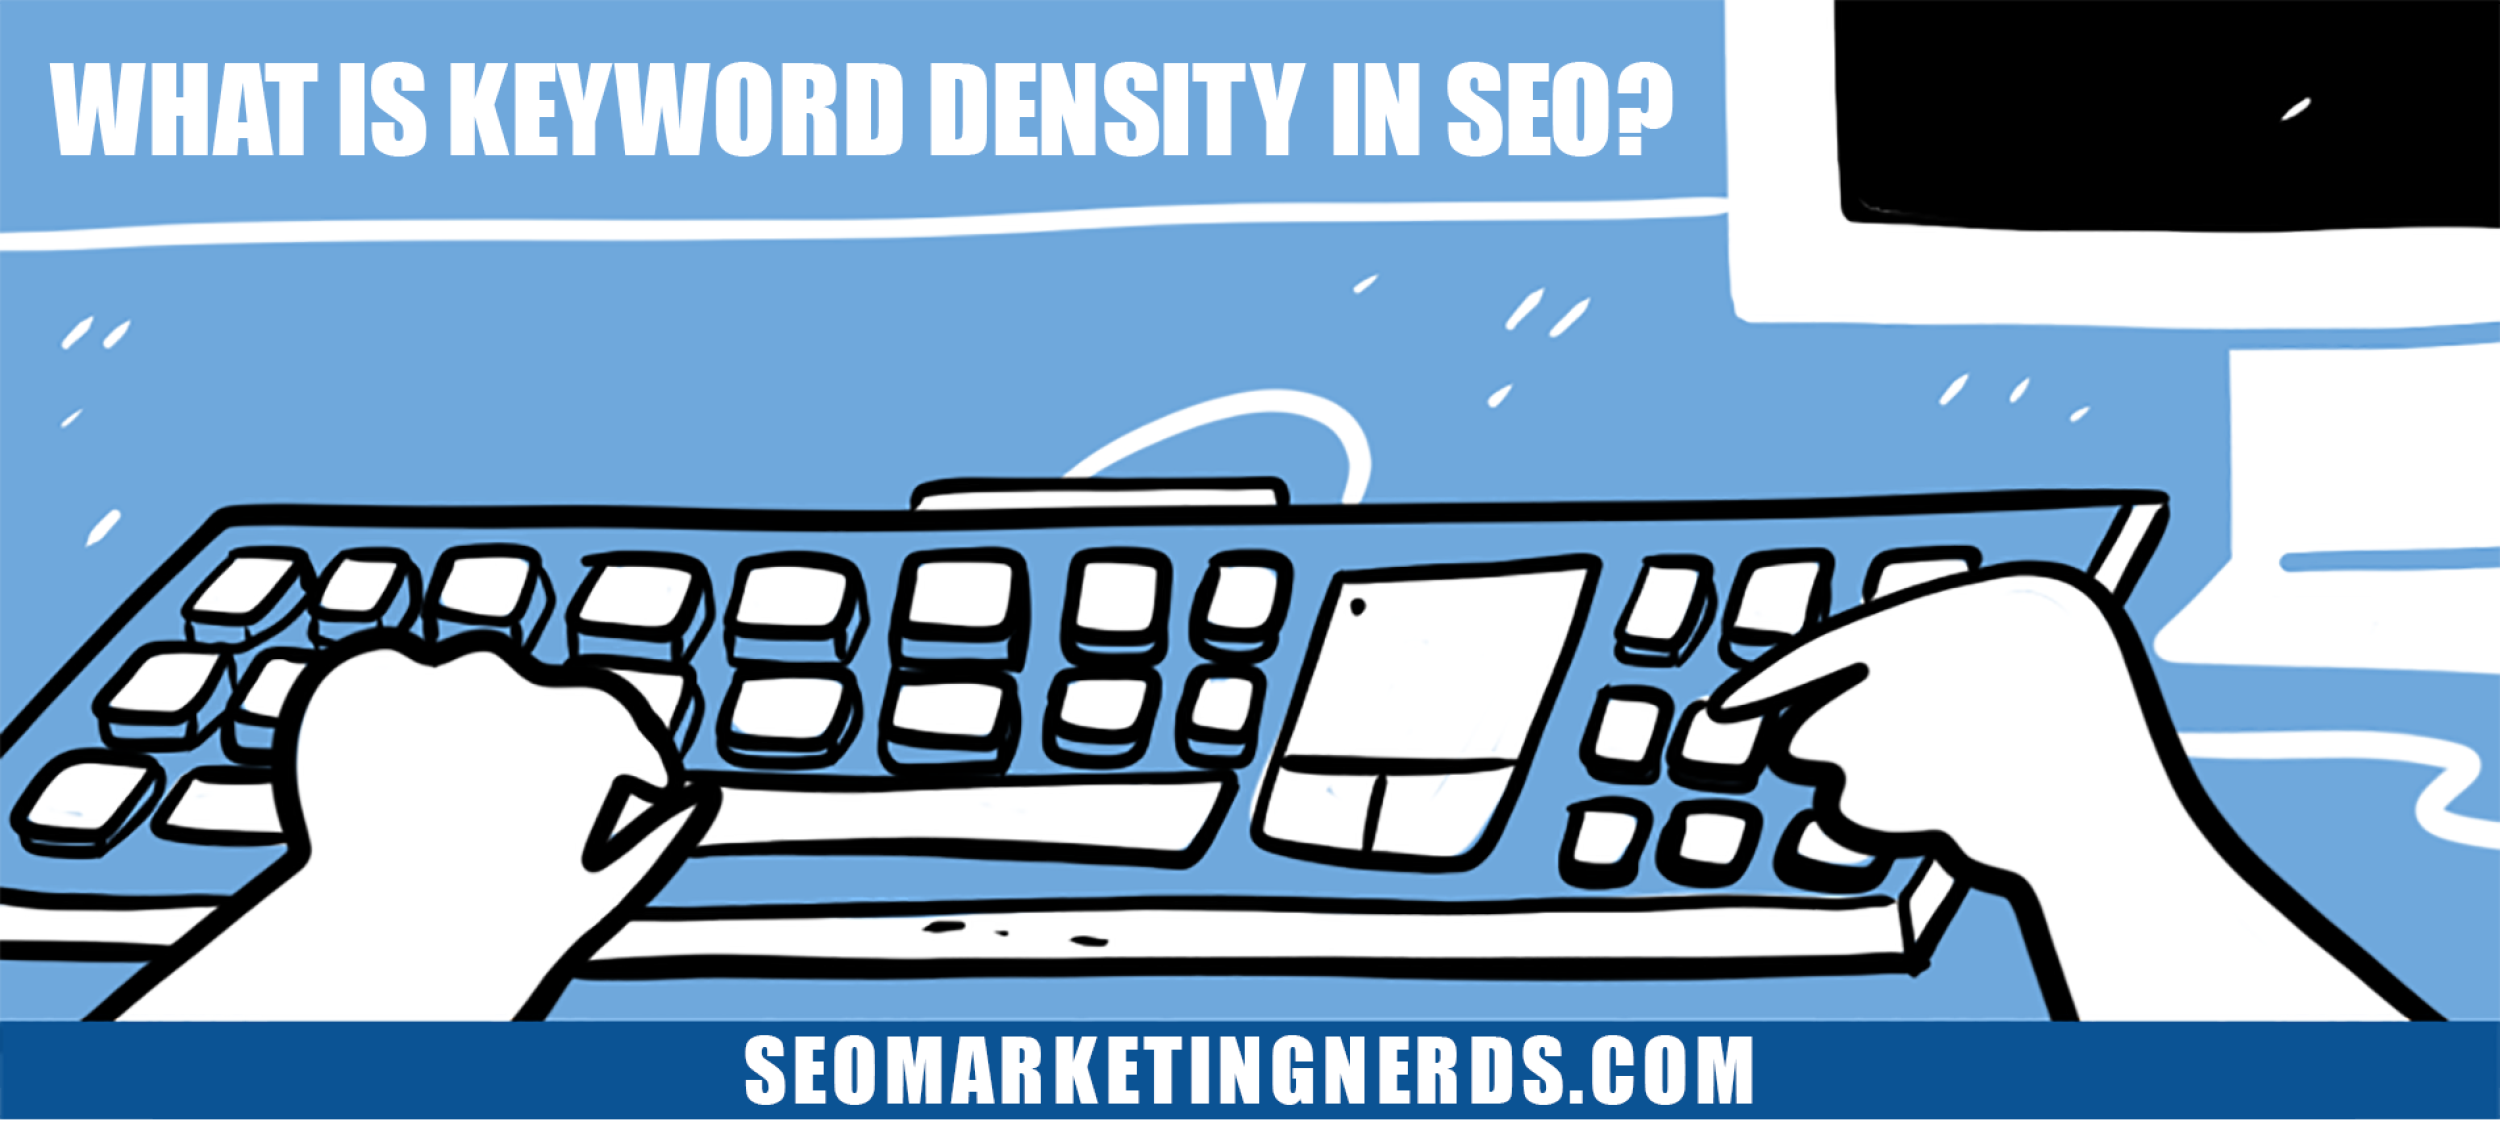 What Is Keyword Density in SEO?